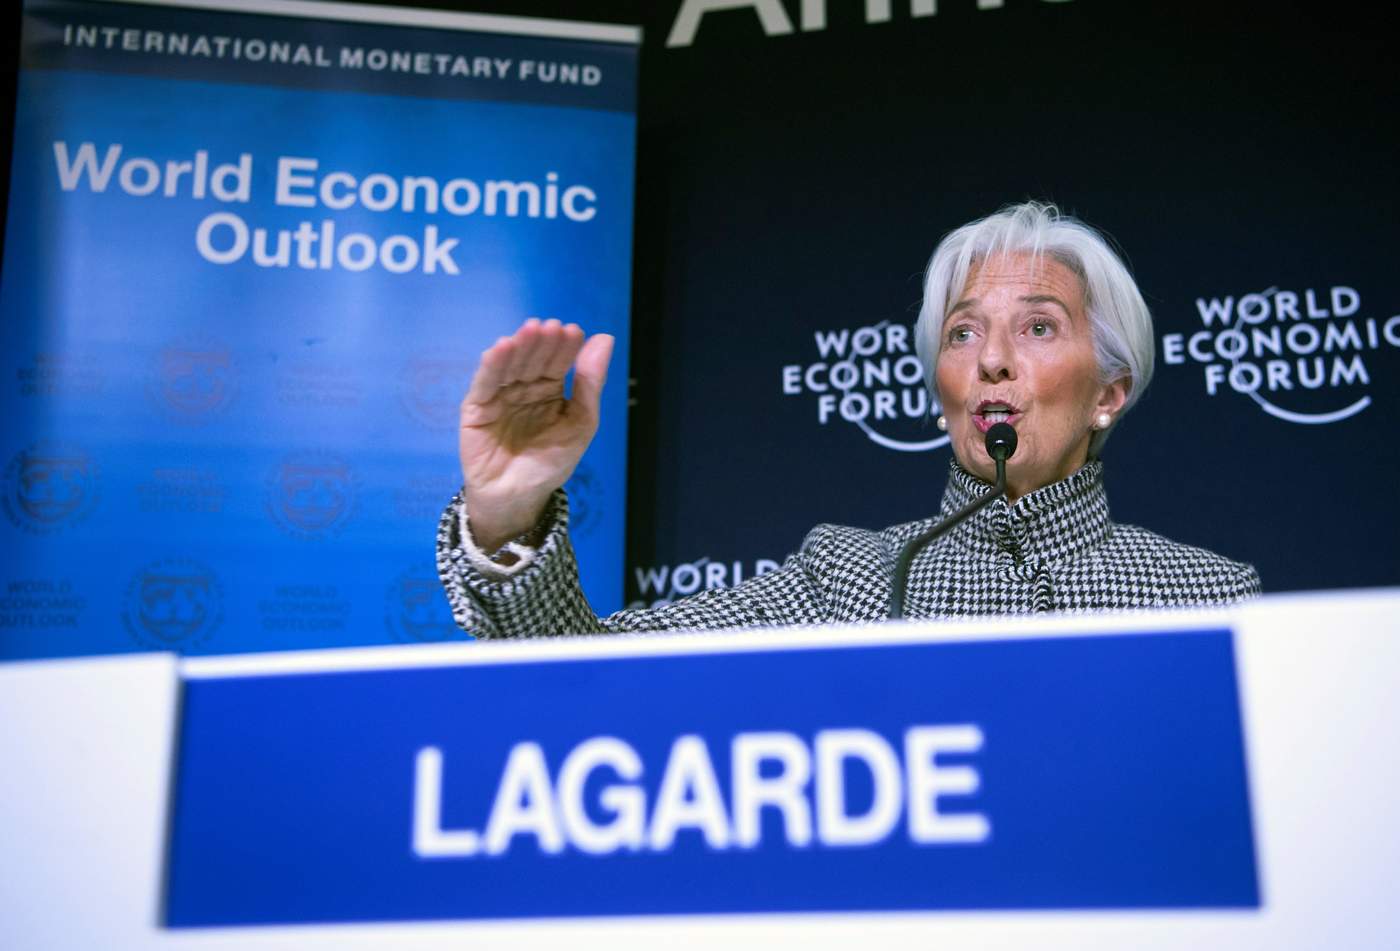 Baja FMI previsiones para 2019 por debilidad global. Noticias en tiempo real